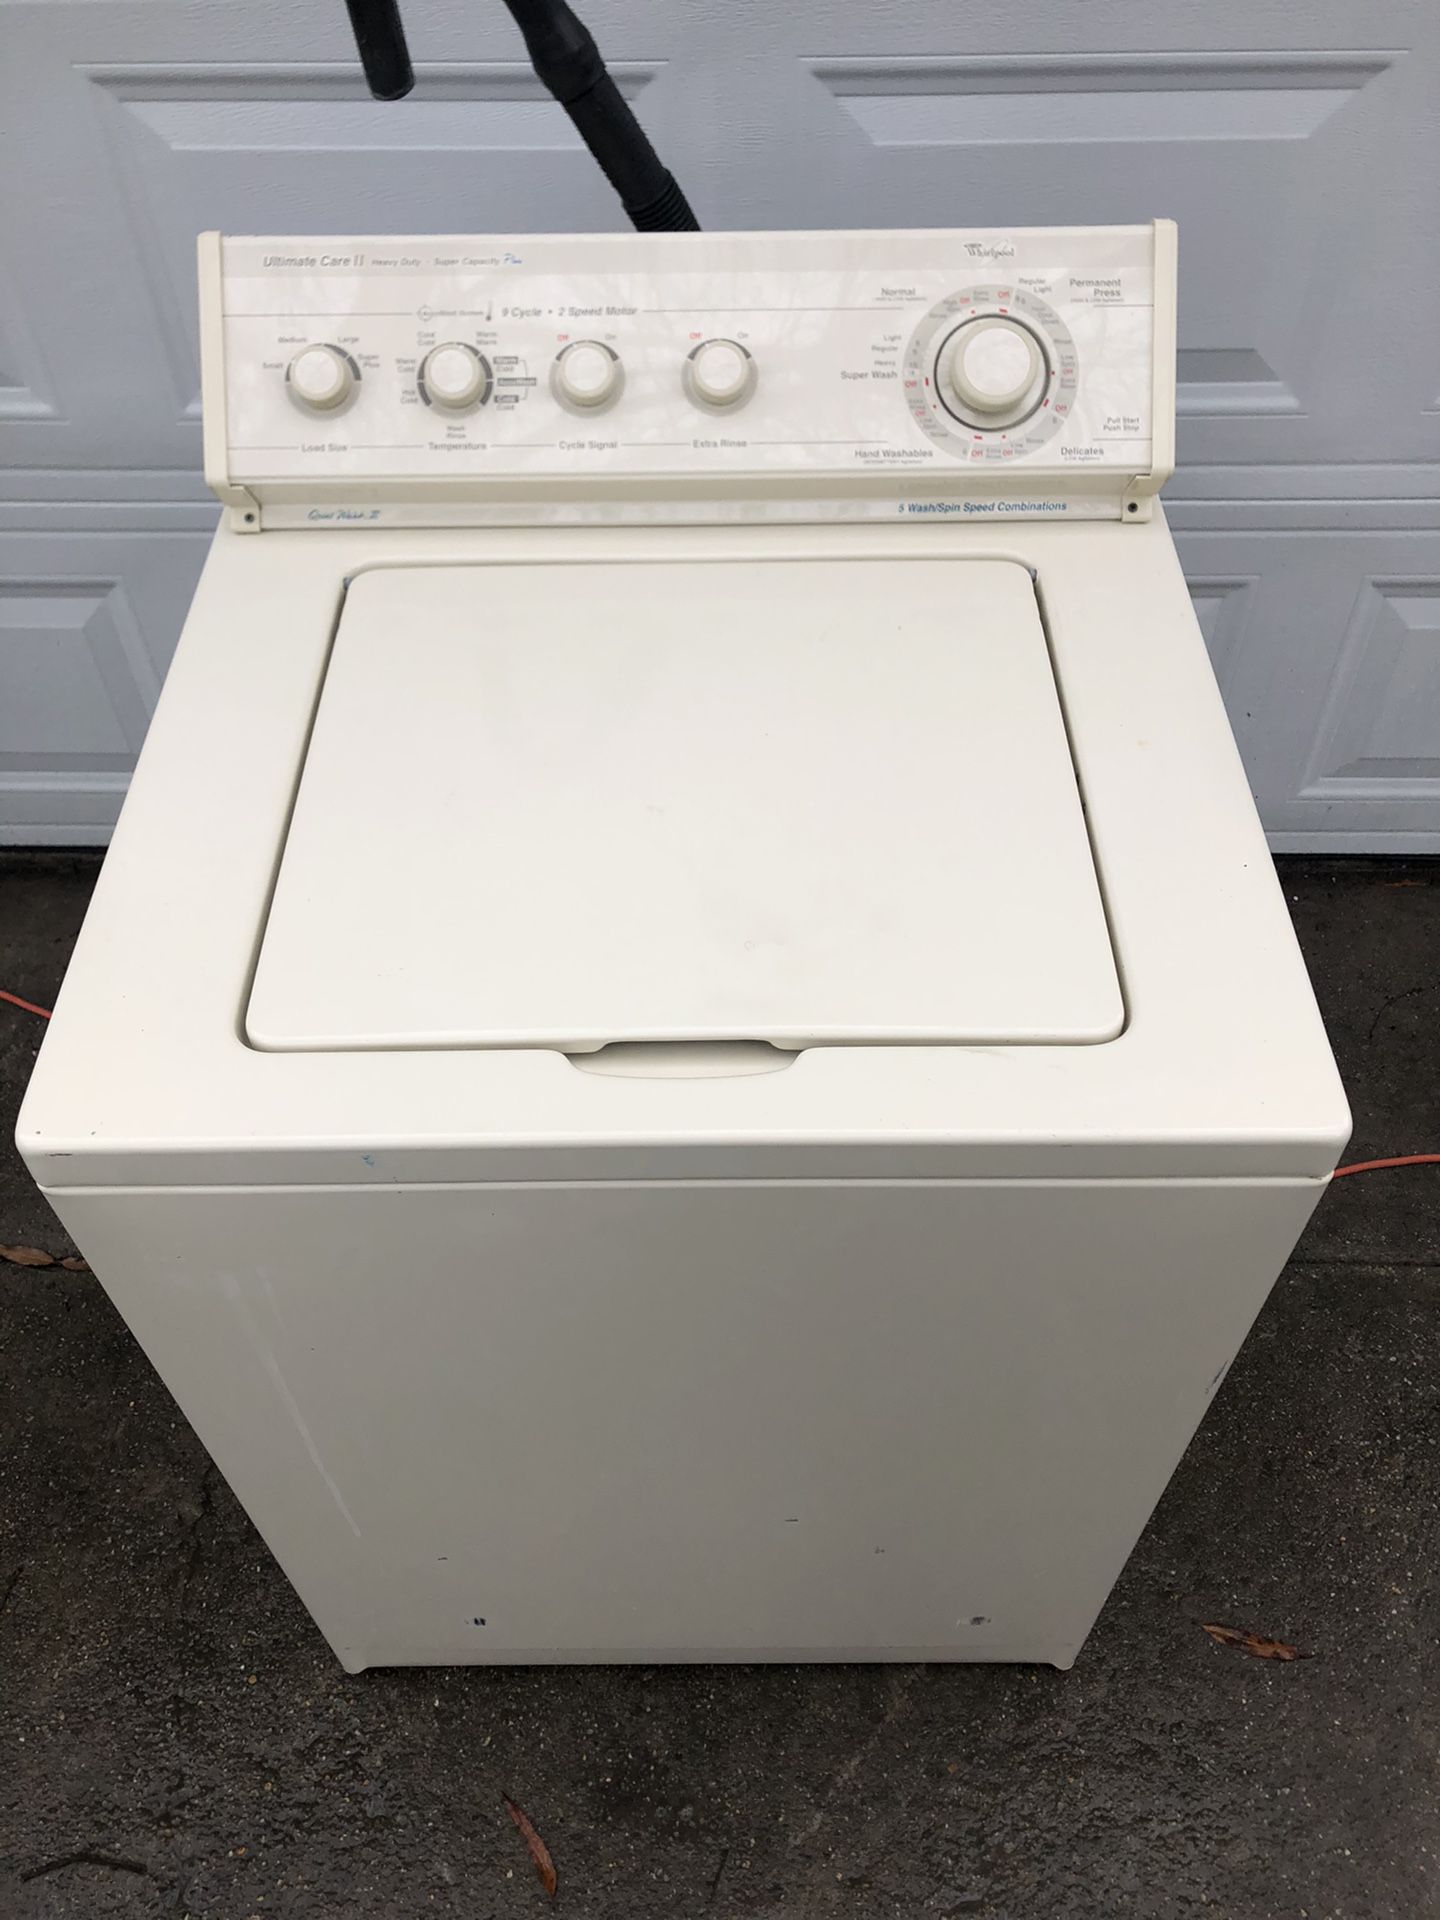 Whirlpool washing machine super capacity plus